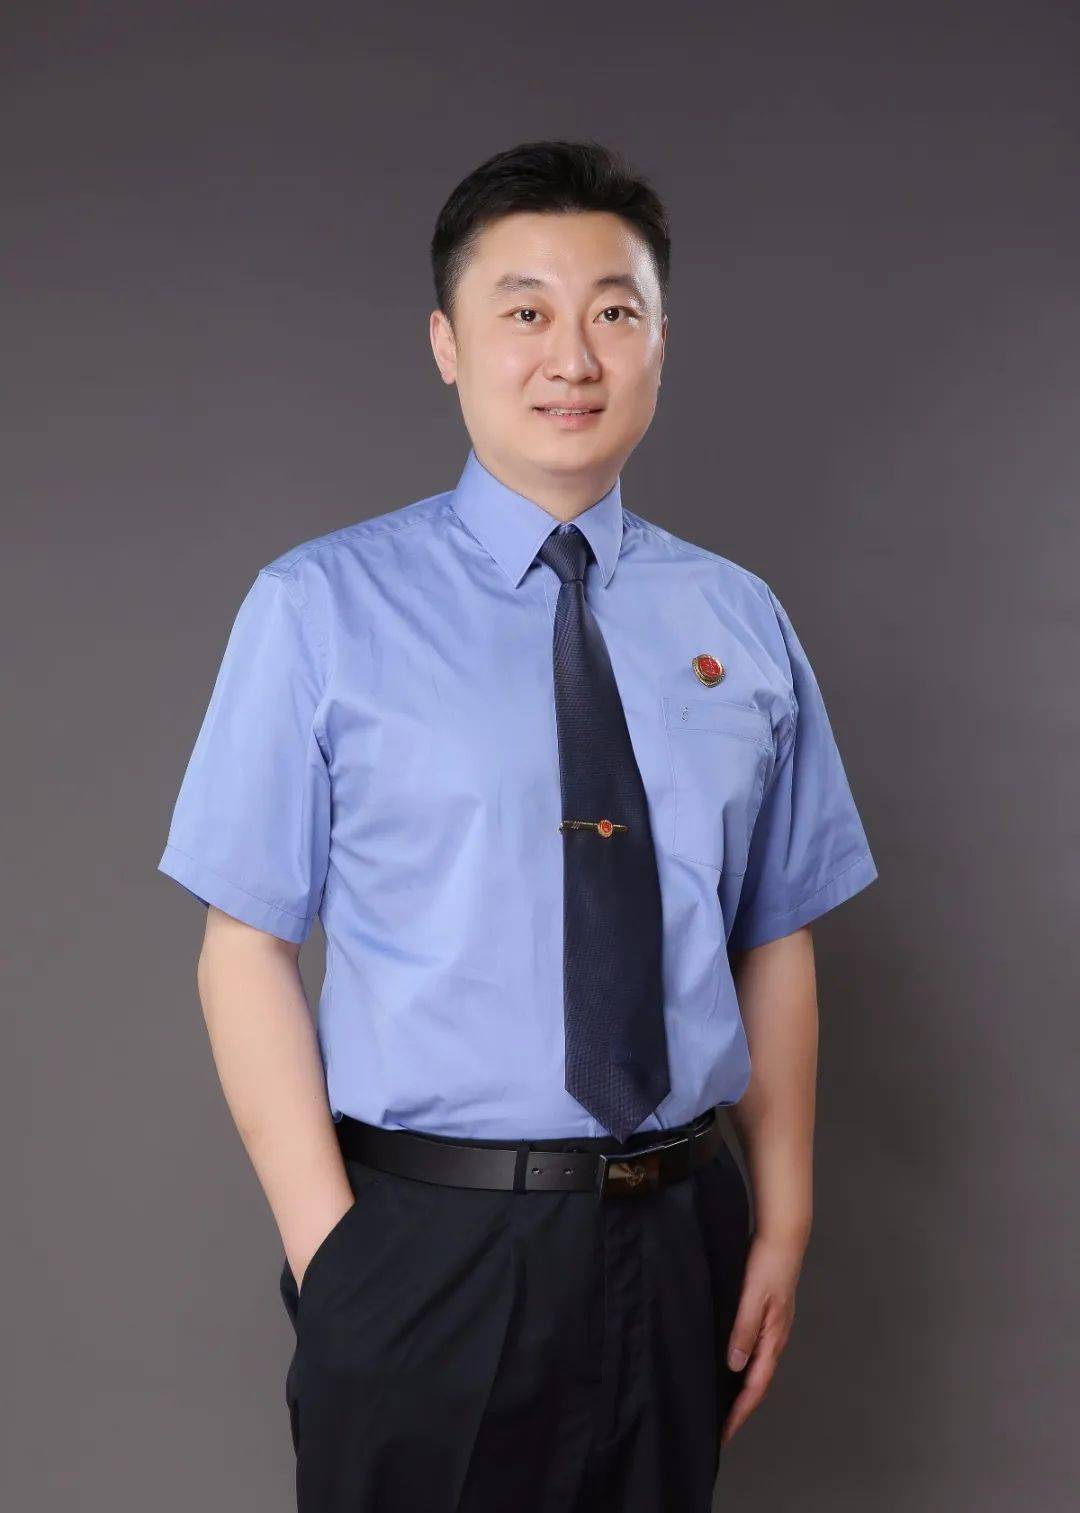 中国检察官服装图片